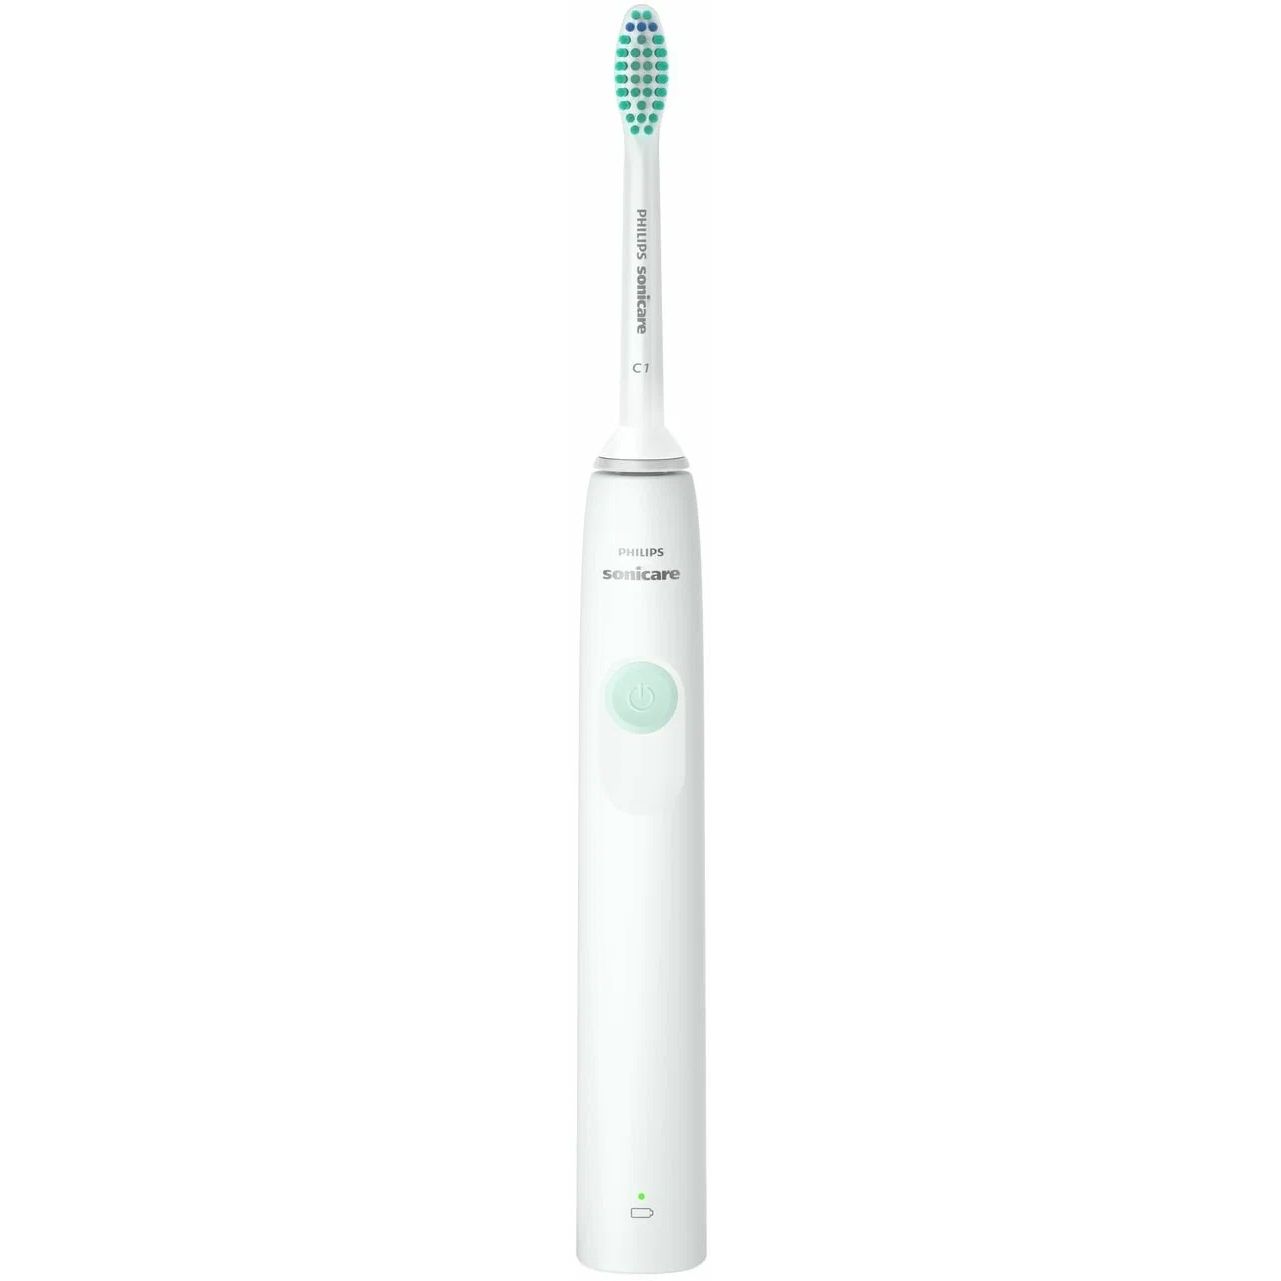 Щётка зубная Philips Sonicare электрическая, HX3641/11 зубная щётка colgate эксперт чистоты средней жёсткости